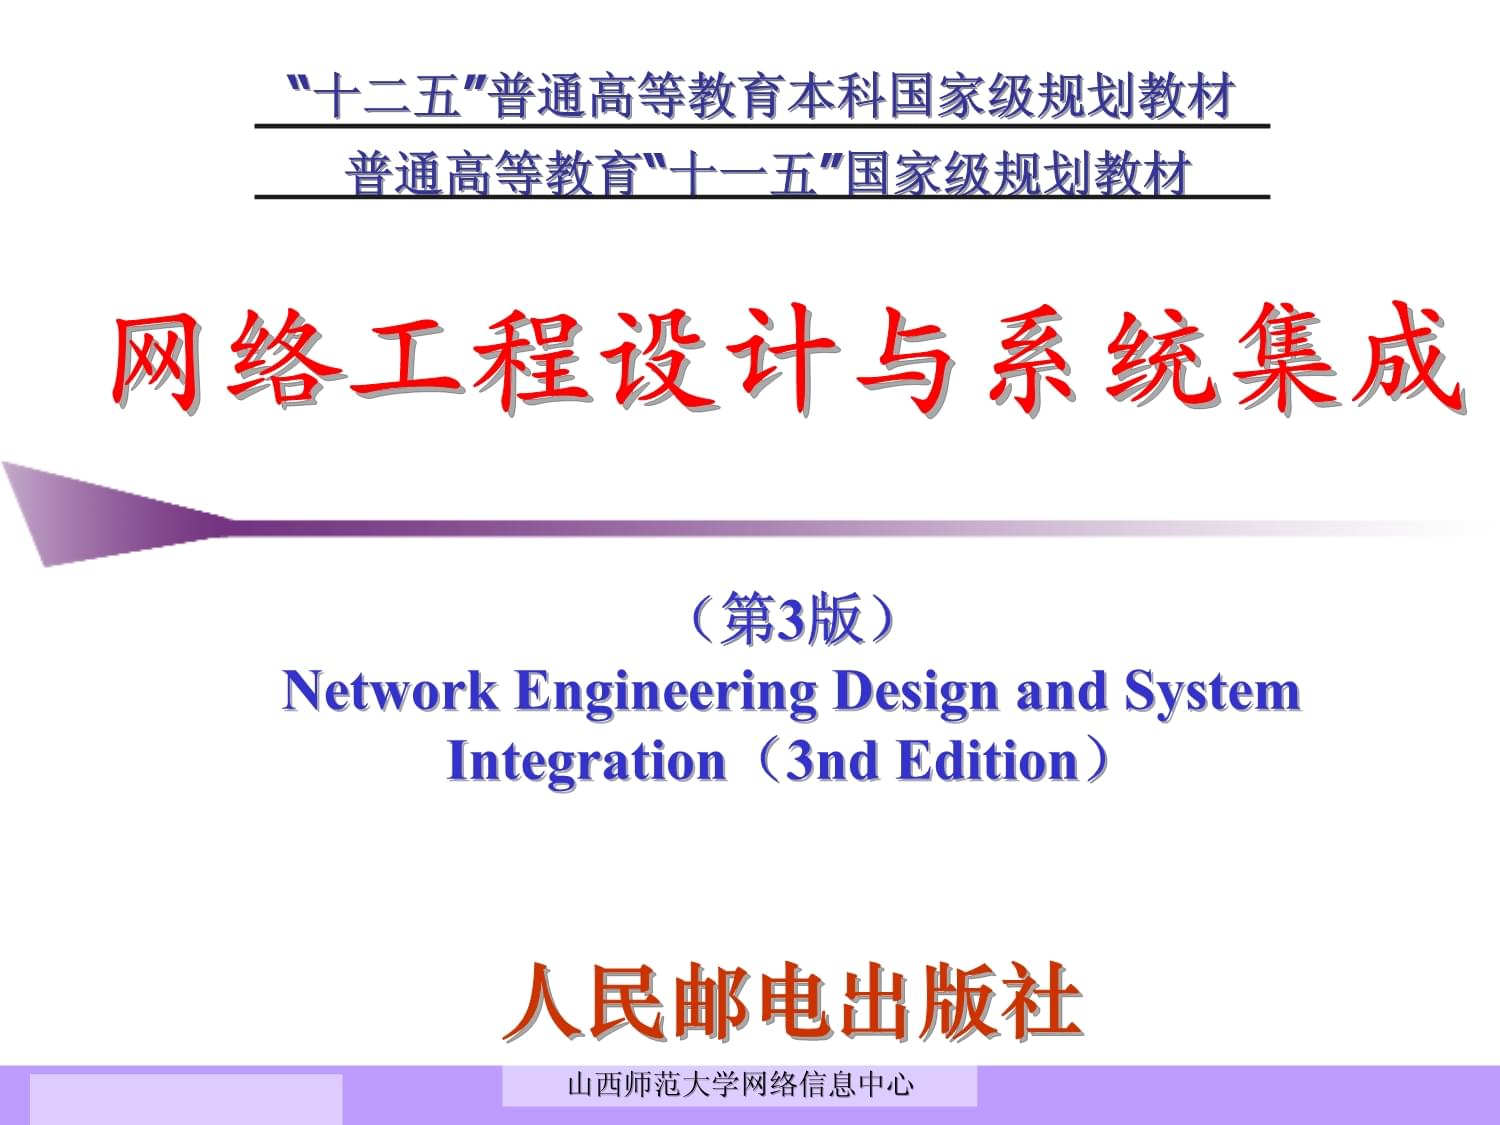 网络工程设计与系统集成(3)第1章